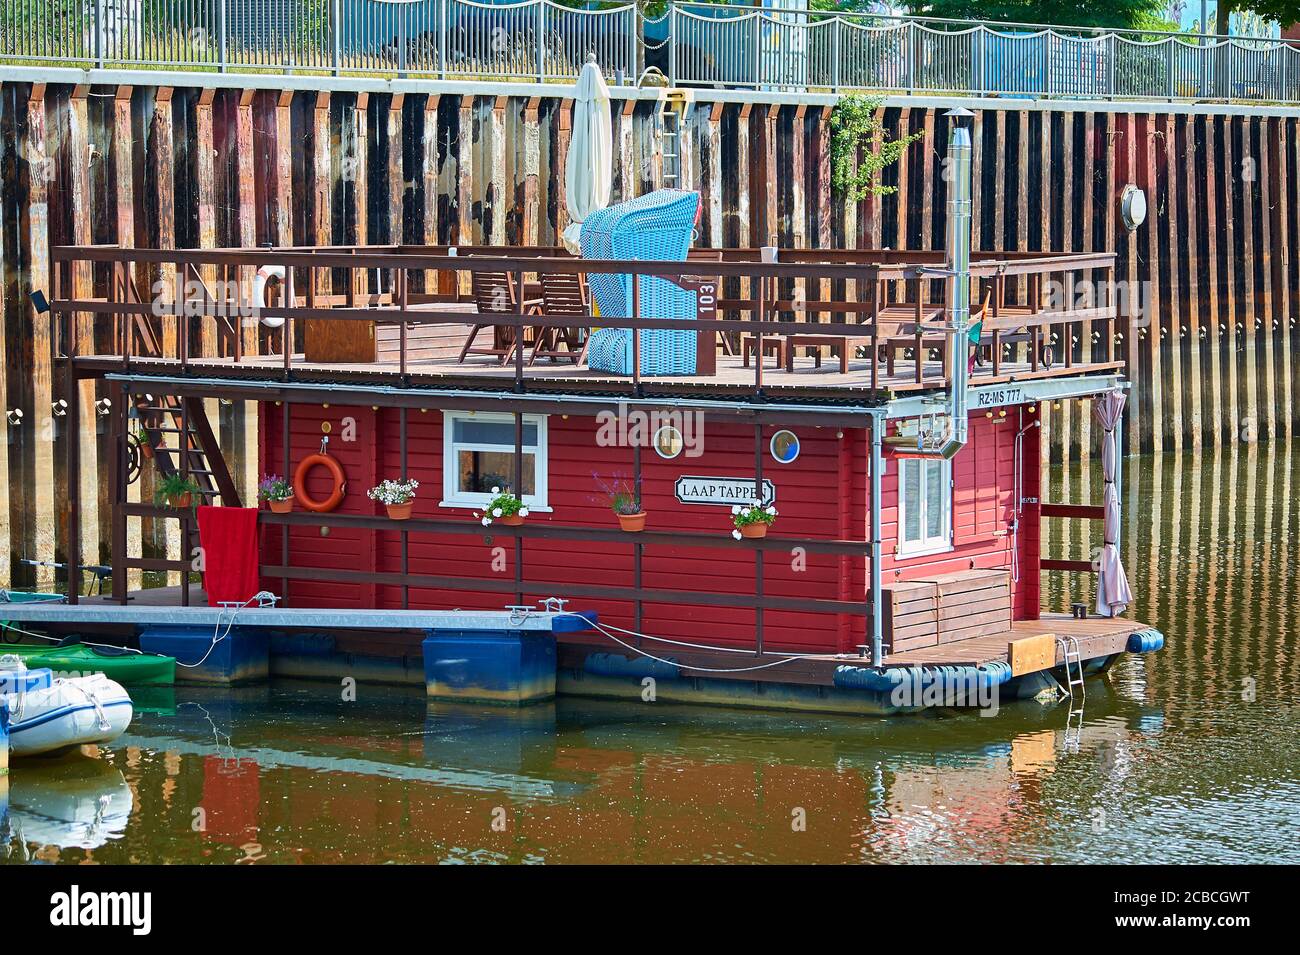 Ein Hausboot mit Liegestuhl auf dem Oberdeck im Binnenhafen von Boizenburg / Elbe, Norddeutschland Stockfoto